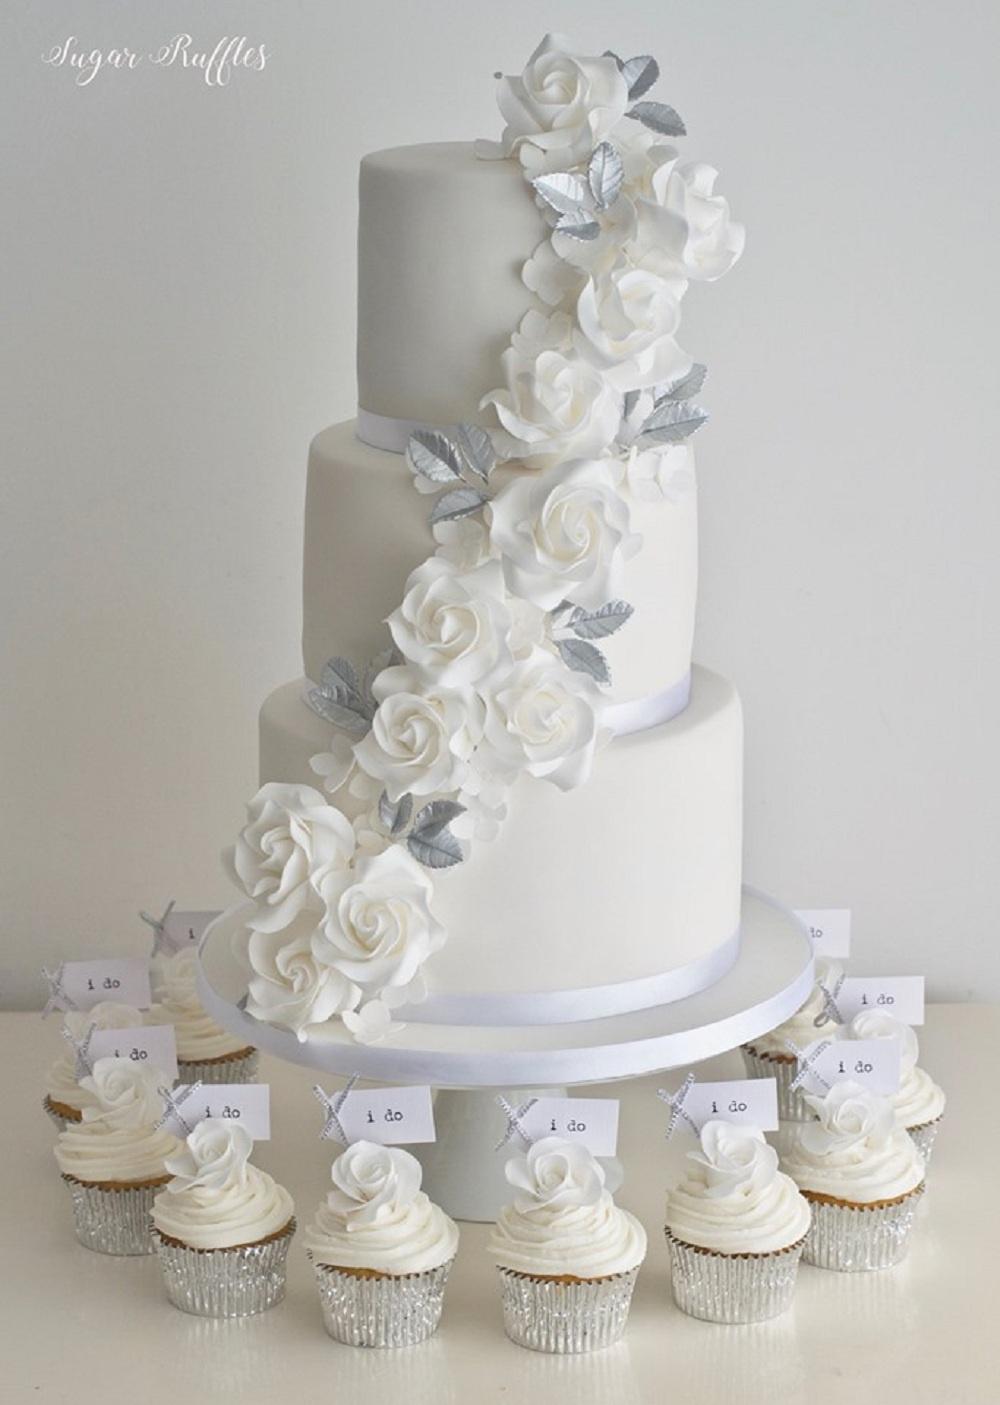 Anniversary cake, 70th wedding anniversary, 60th anniversary cakes